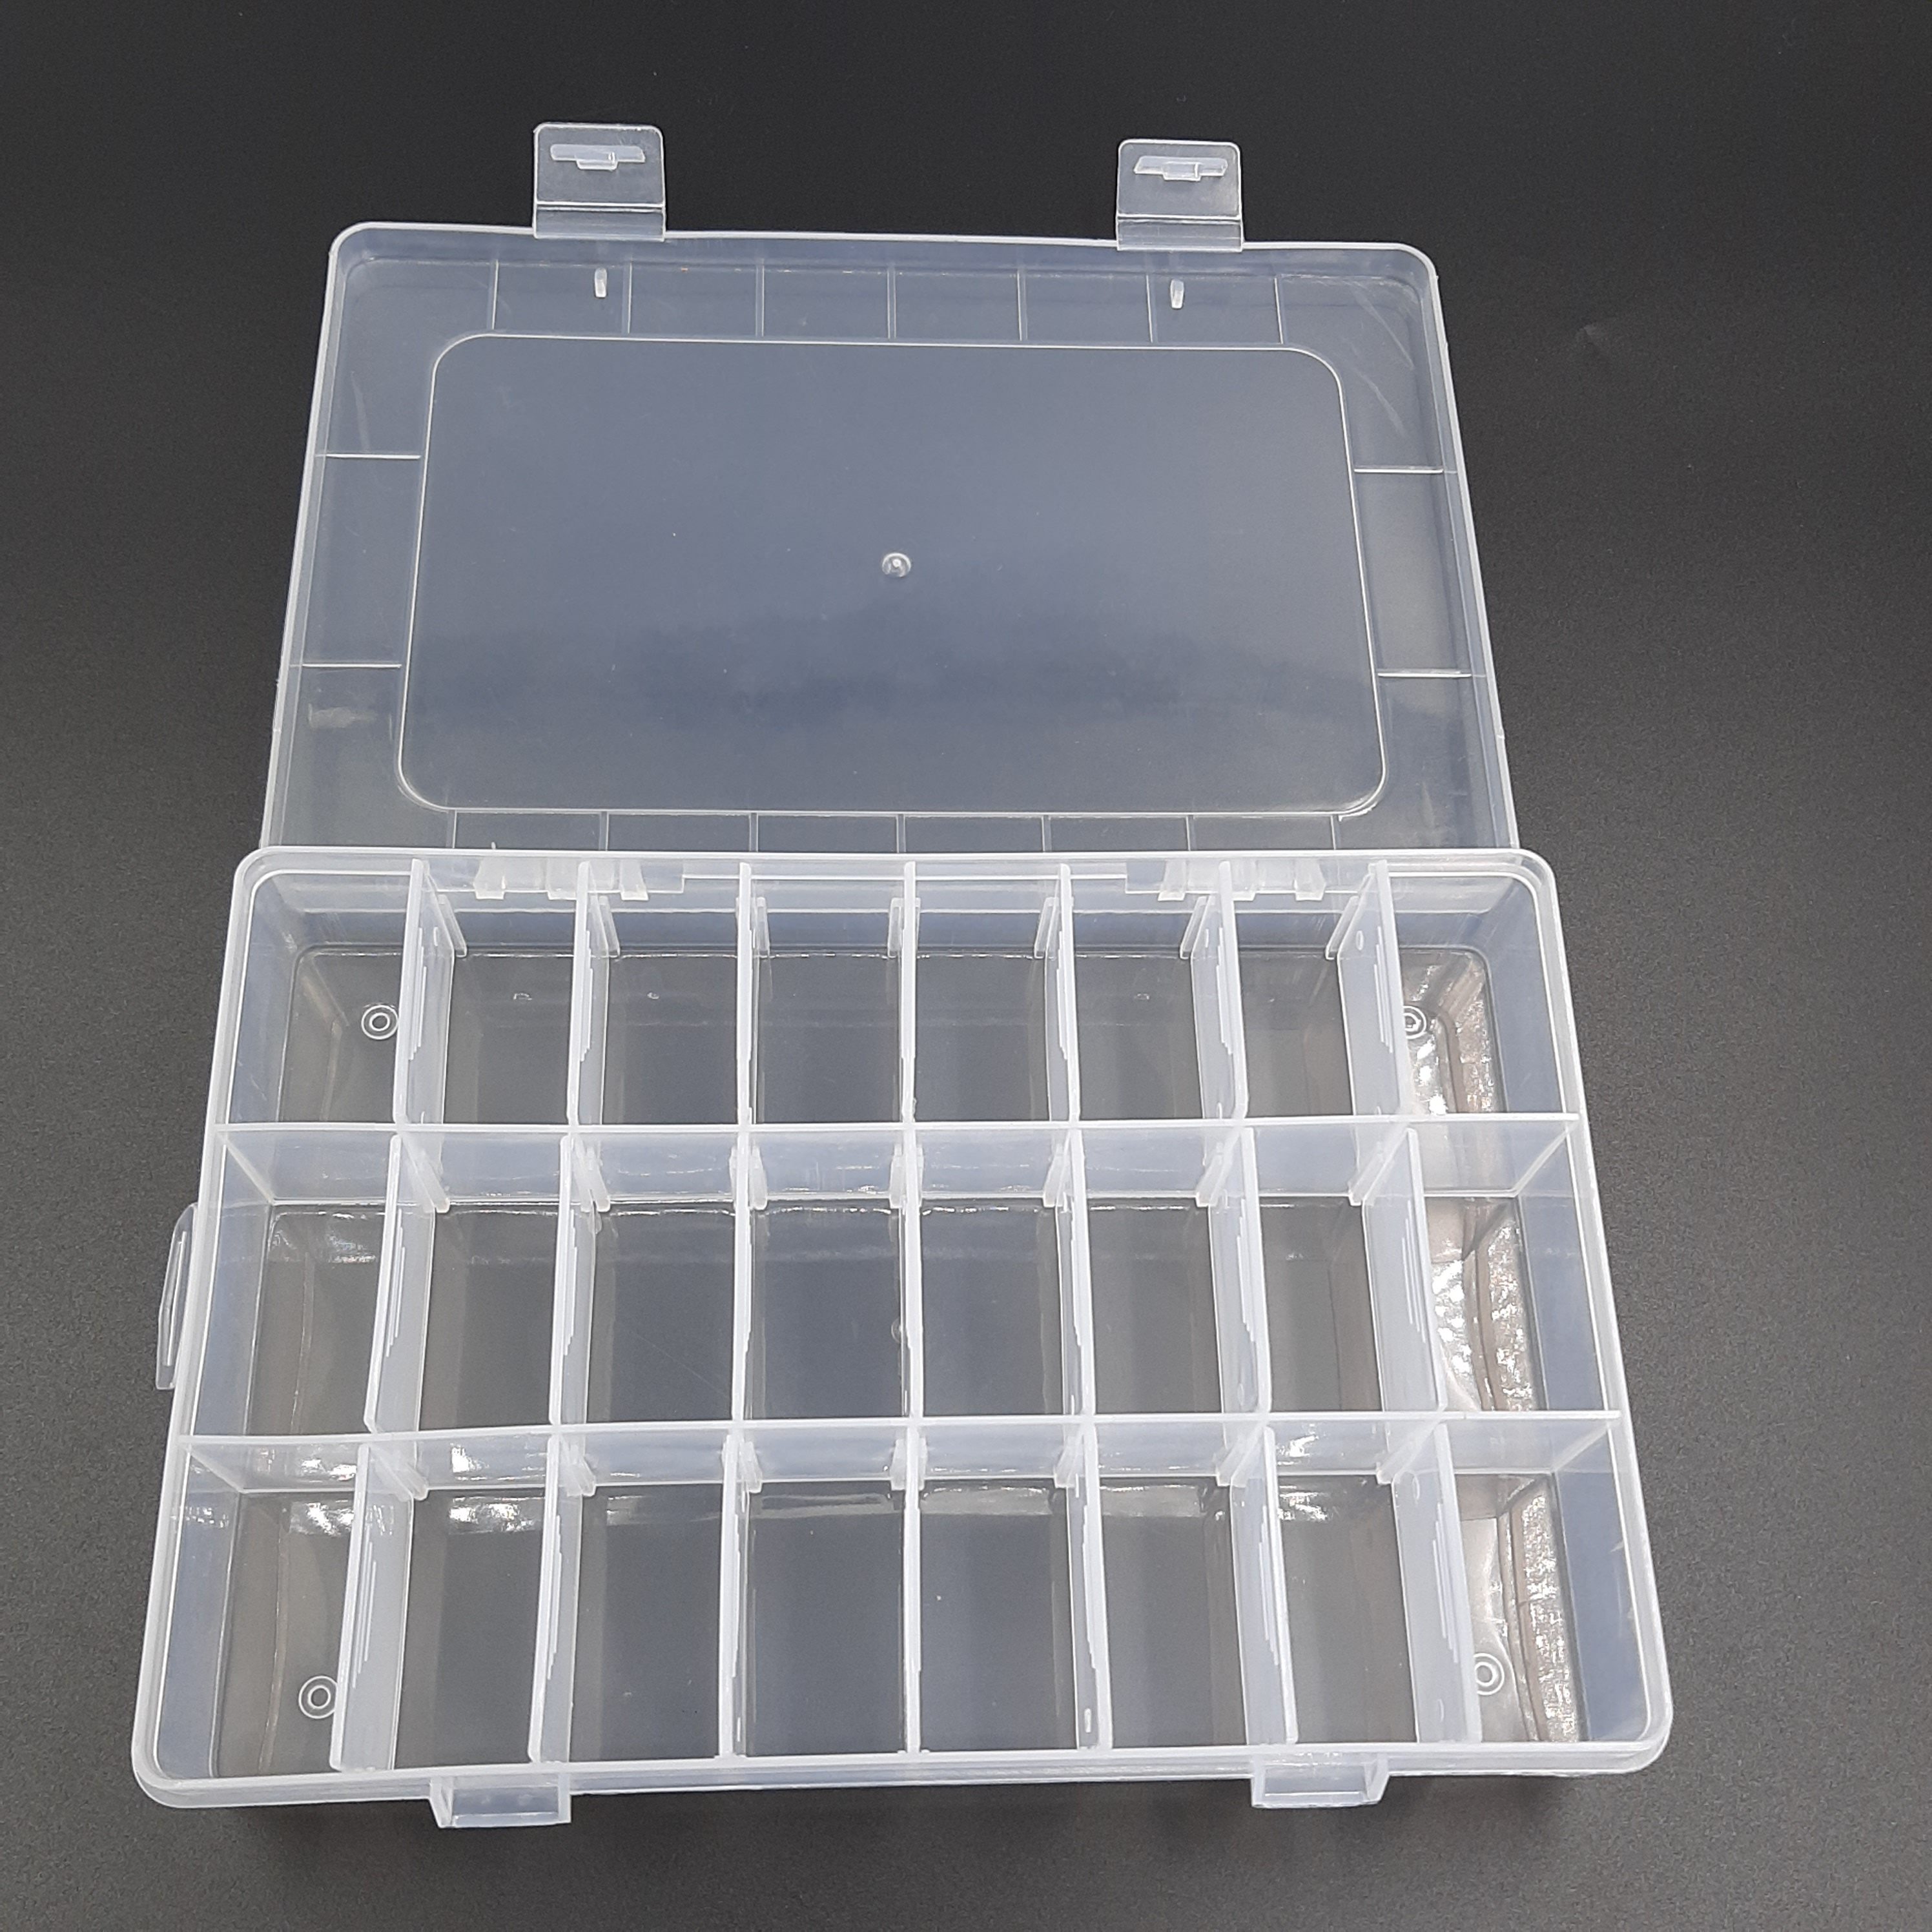 Caja plástica organizadora rectangular 24 espacios